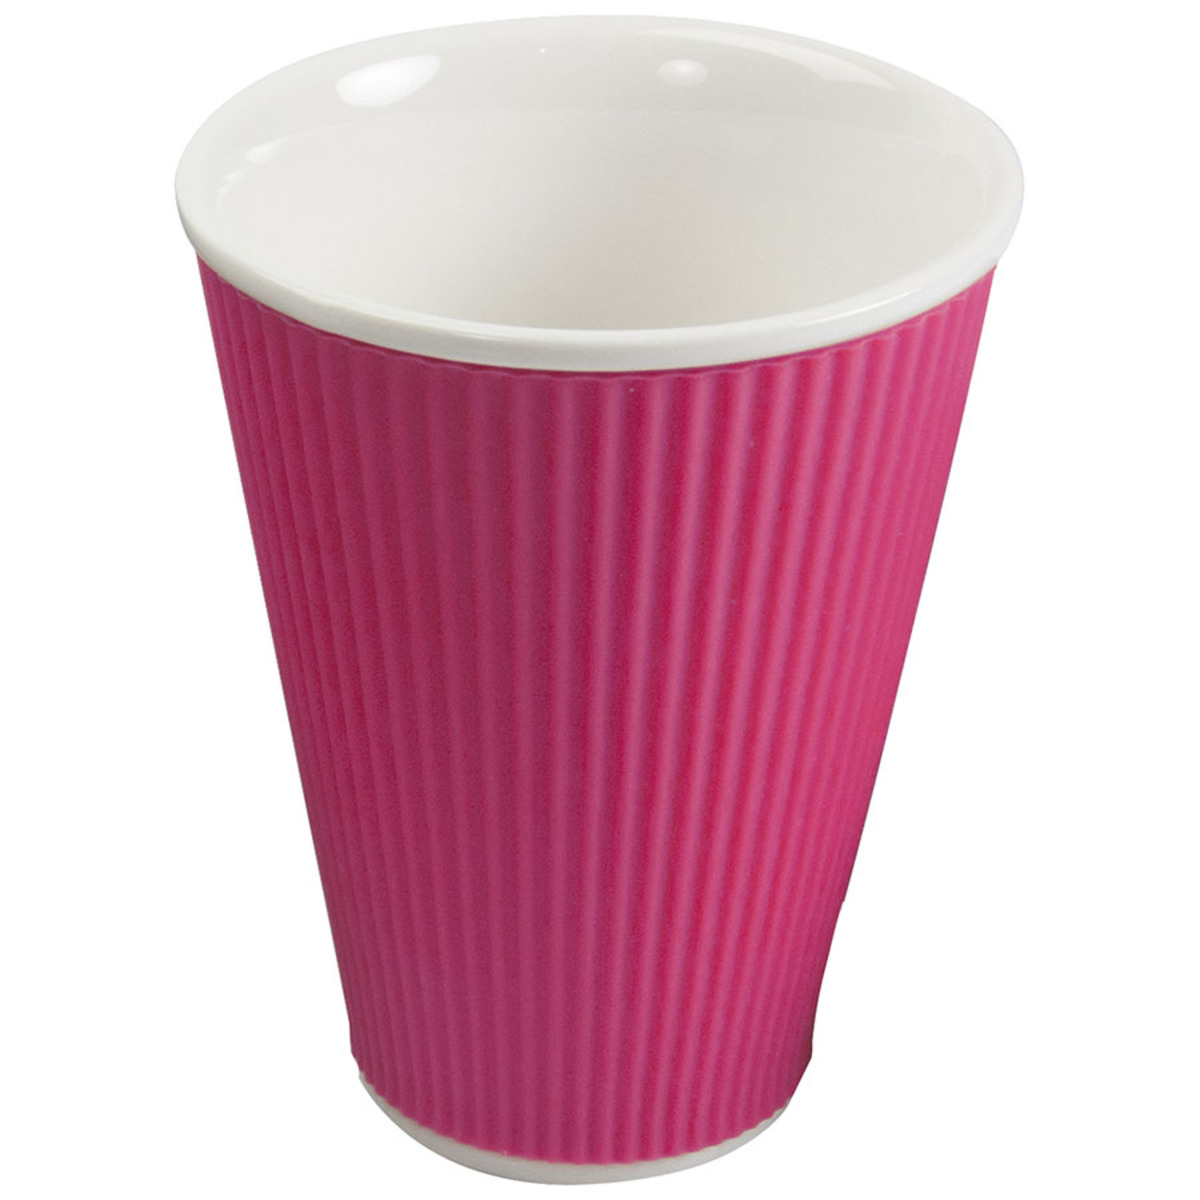 Gobelet 30cl en porcelaine avec silicone thermo-protecteur strié rose